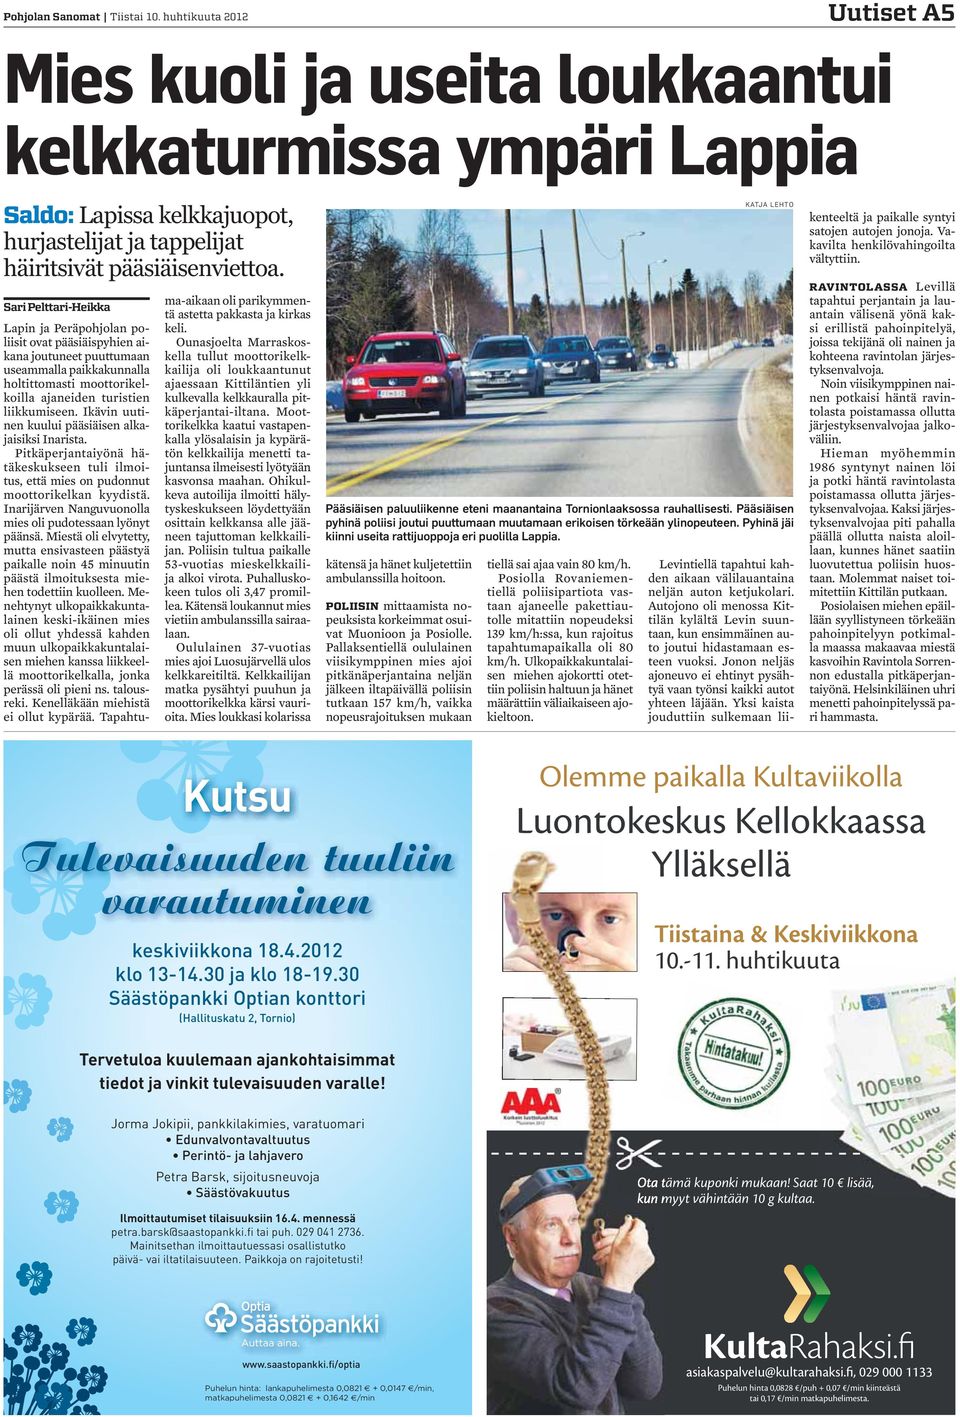 Sari Pelttari-Heikka Lapin ja Peräpohjolan poliisit ovat pääsiäispyhien aikana joutuneet puuttumaan useammalla paikkakunnalla holtittomasti moottorikelkoilla ajaneiden turistien liikkumiseen.